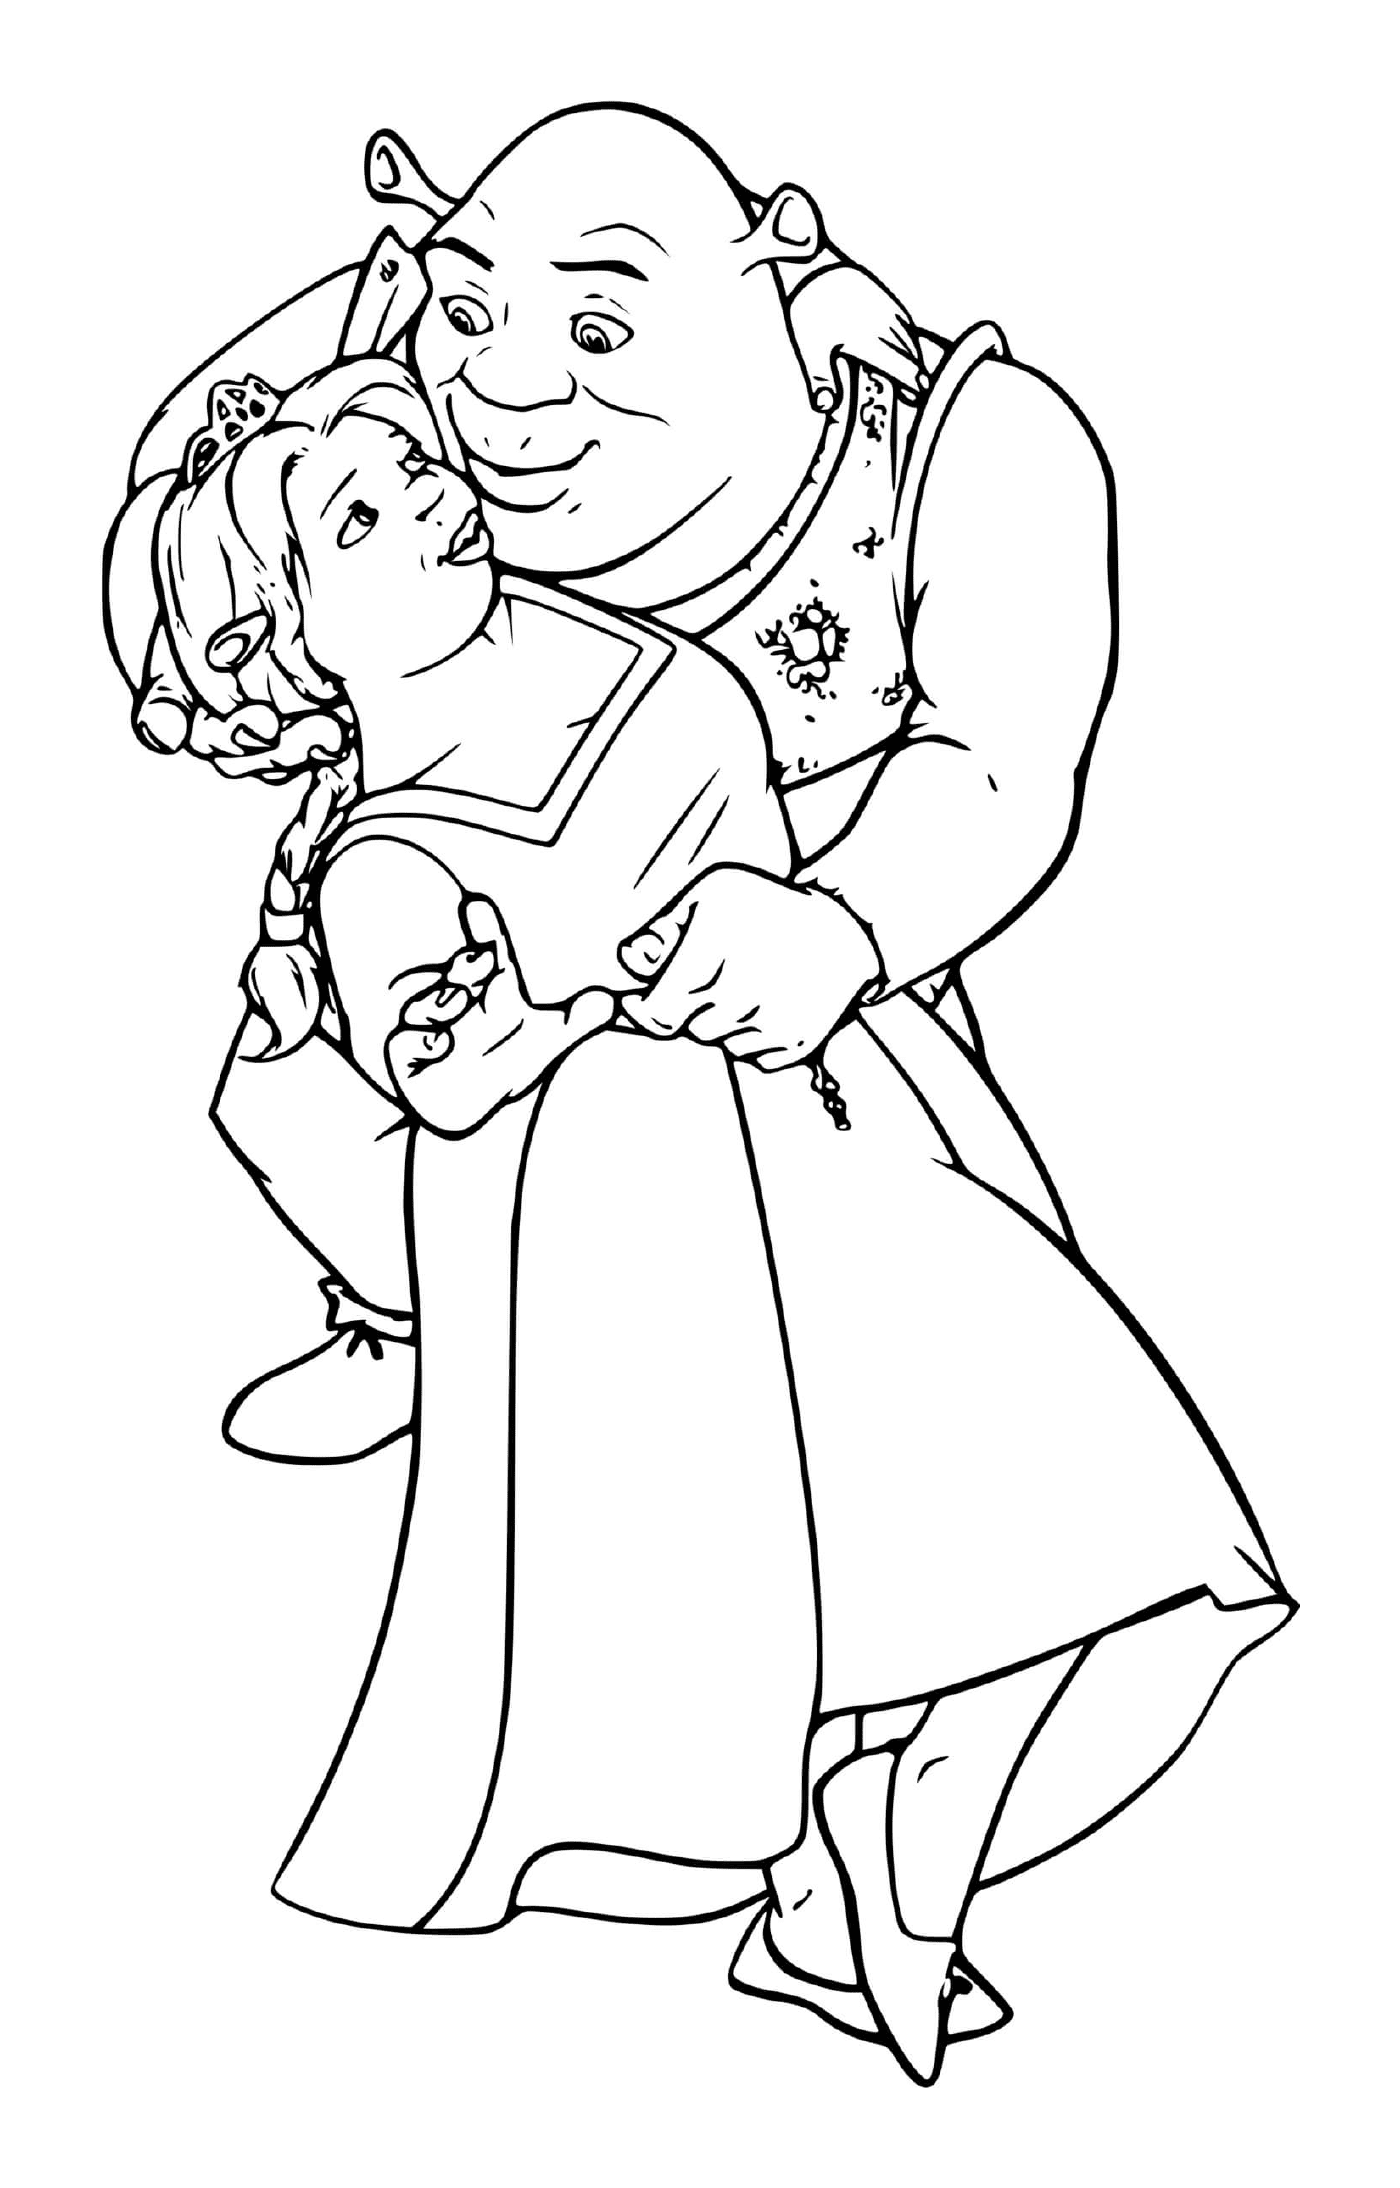  رجل عجوز يحمل فتاة صغيرة بين ذراعيه 